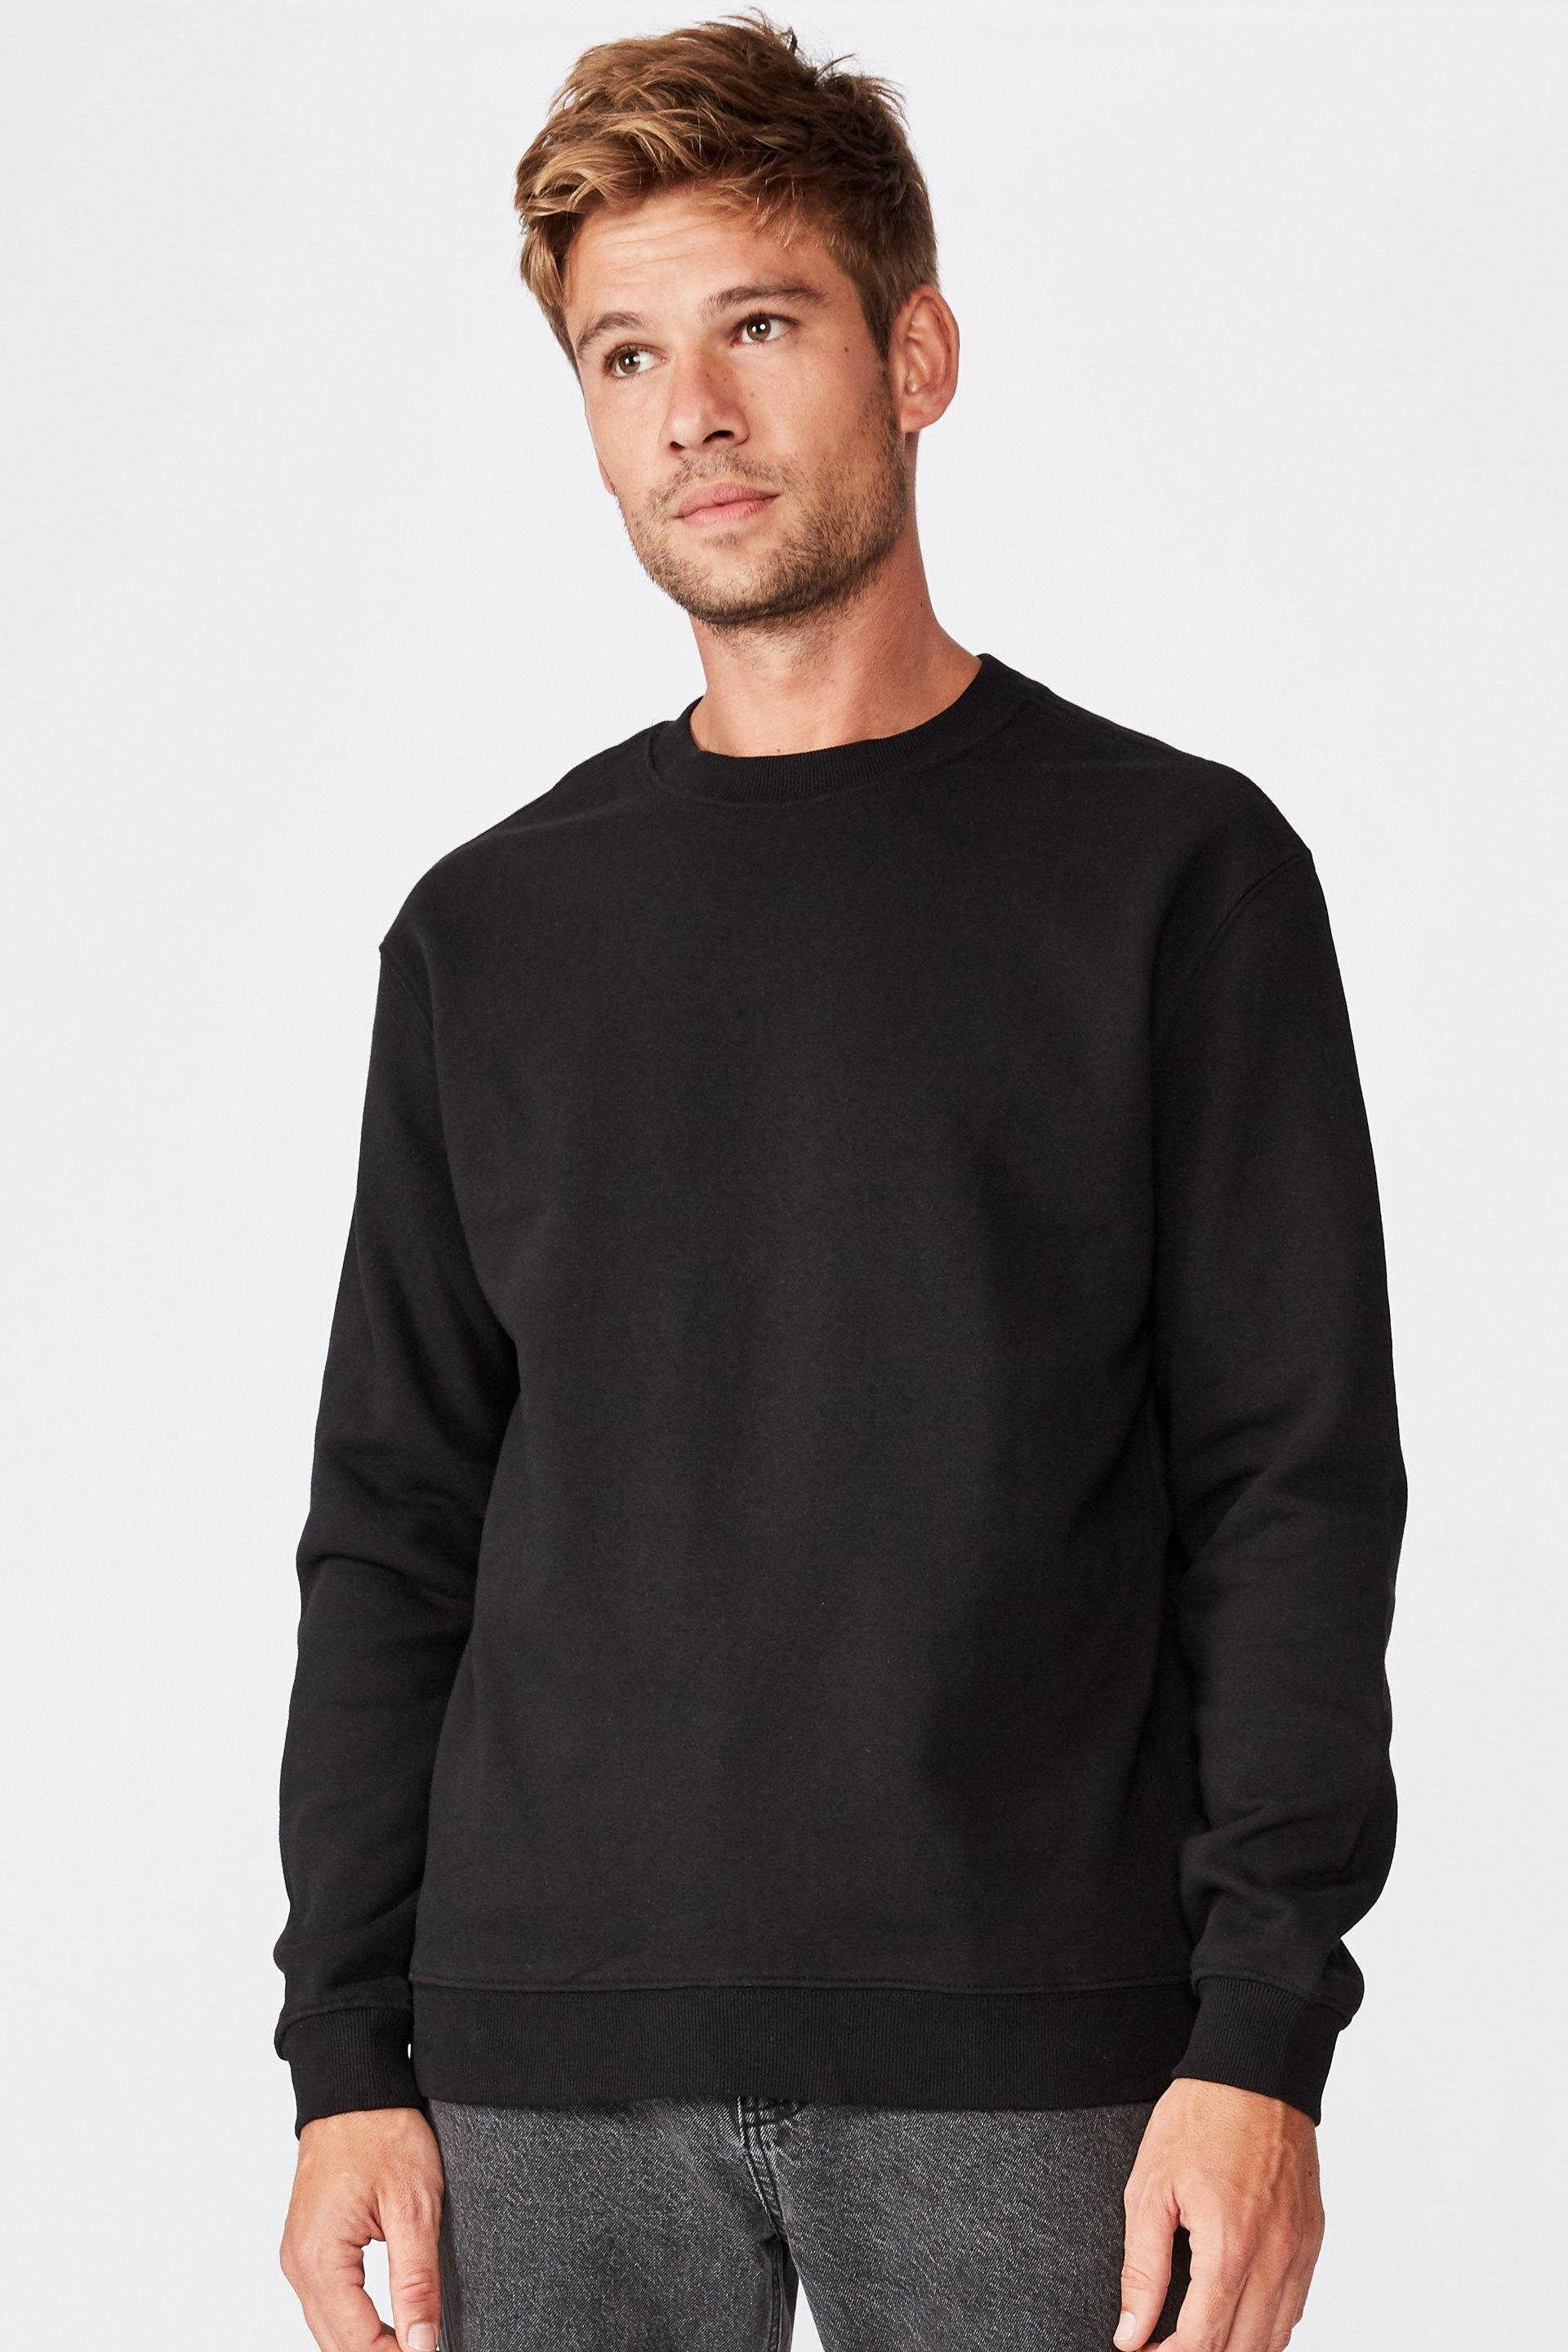 Essential crew fleece - black Cotton On Hoodies & Sweats | Superbalist.com